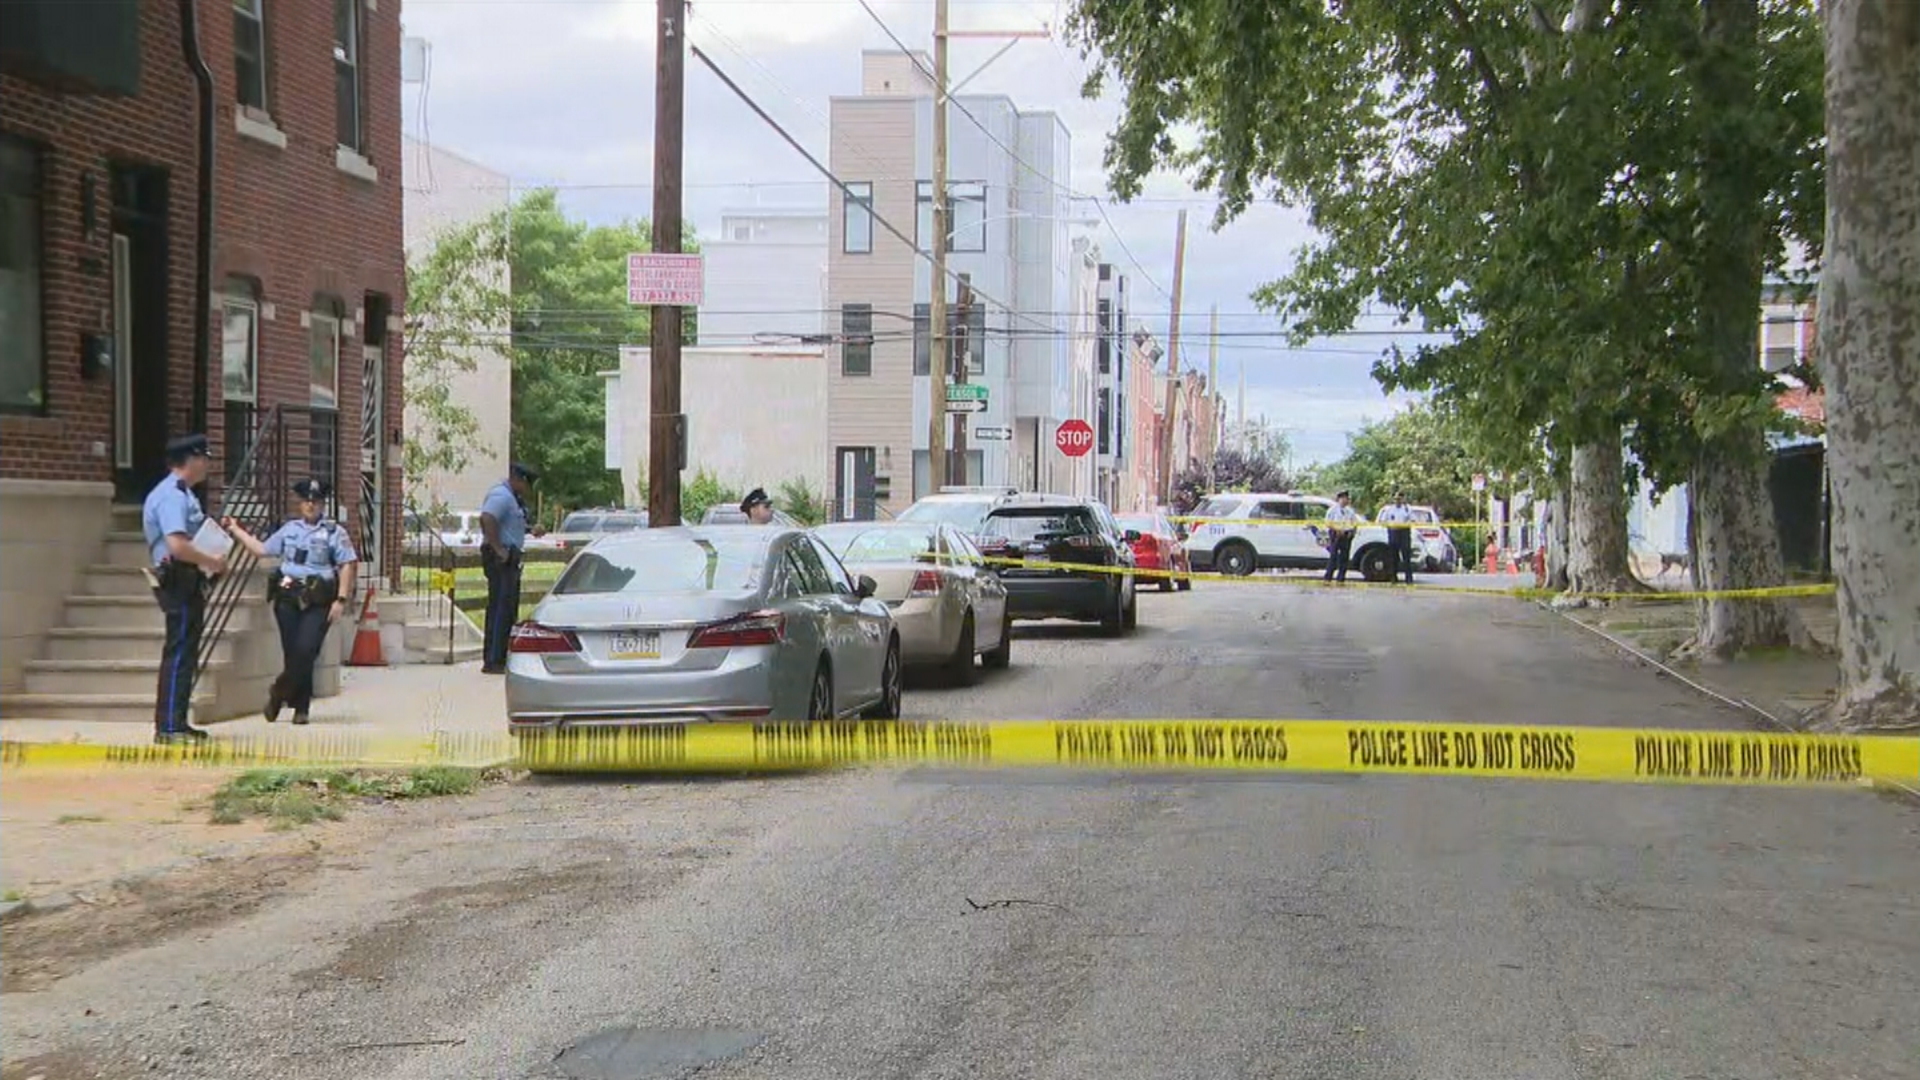 8 Separate Shootings In Philadelphia Leave 3 People Dead, 5 Others Injured: Police